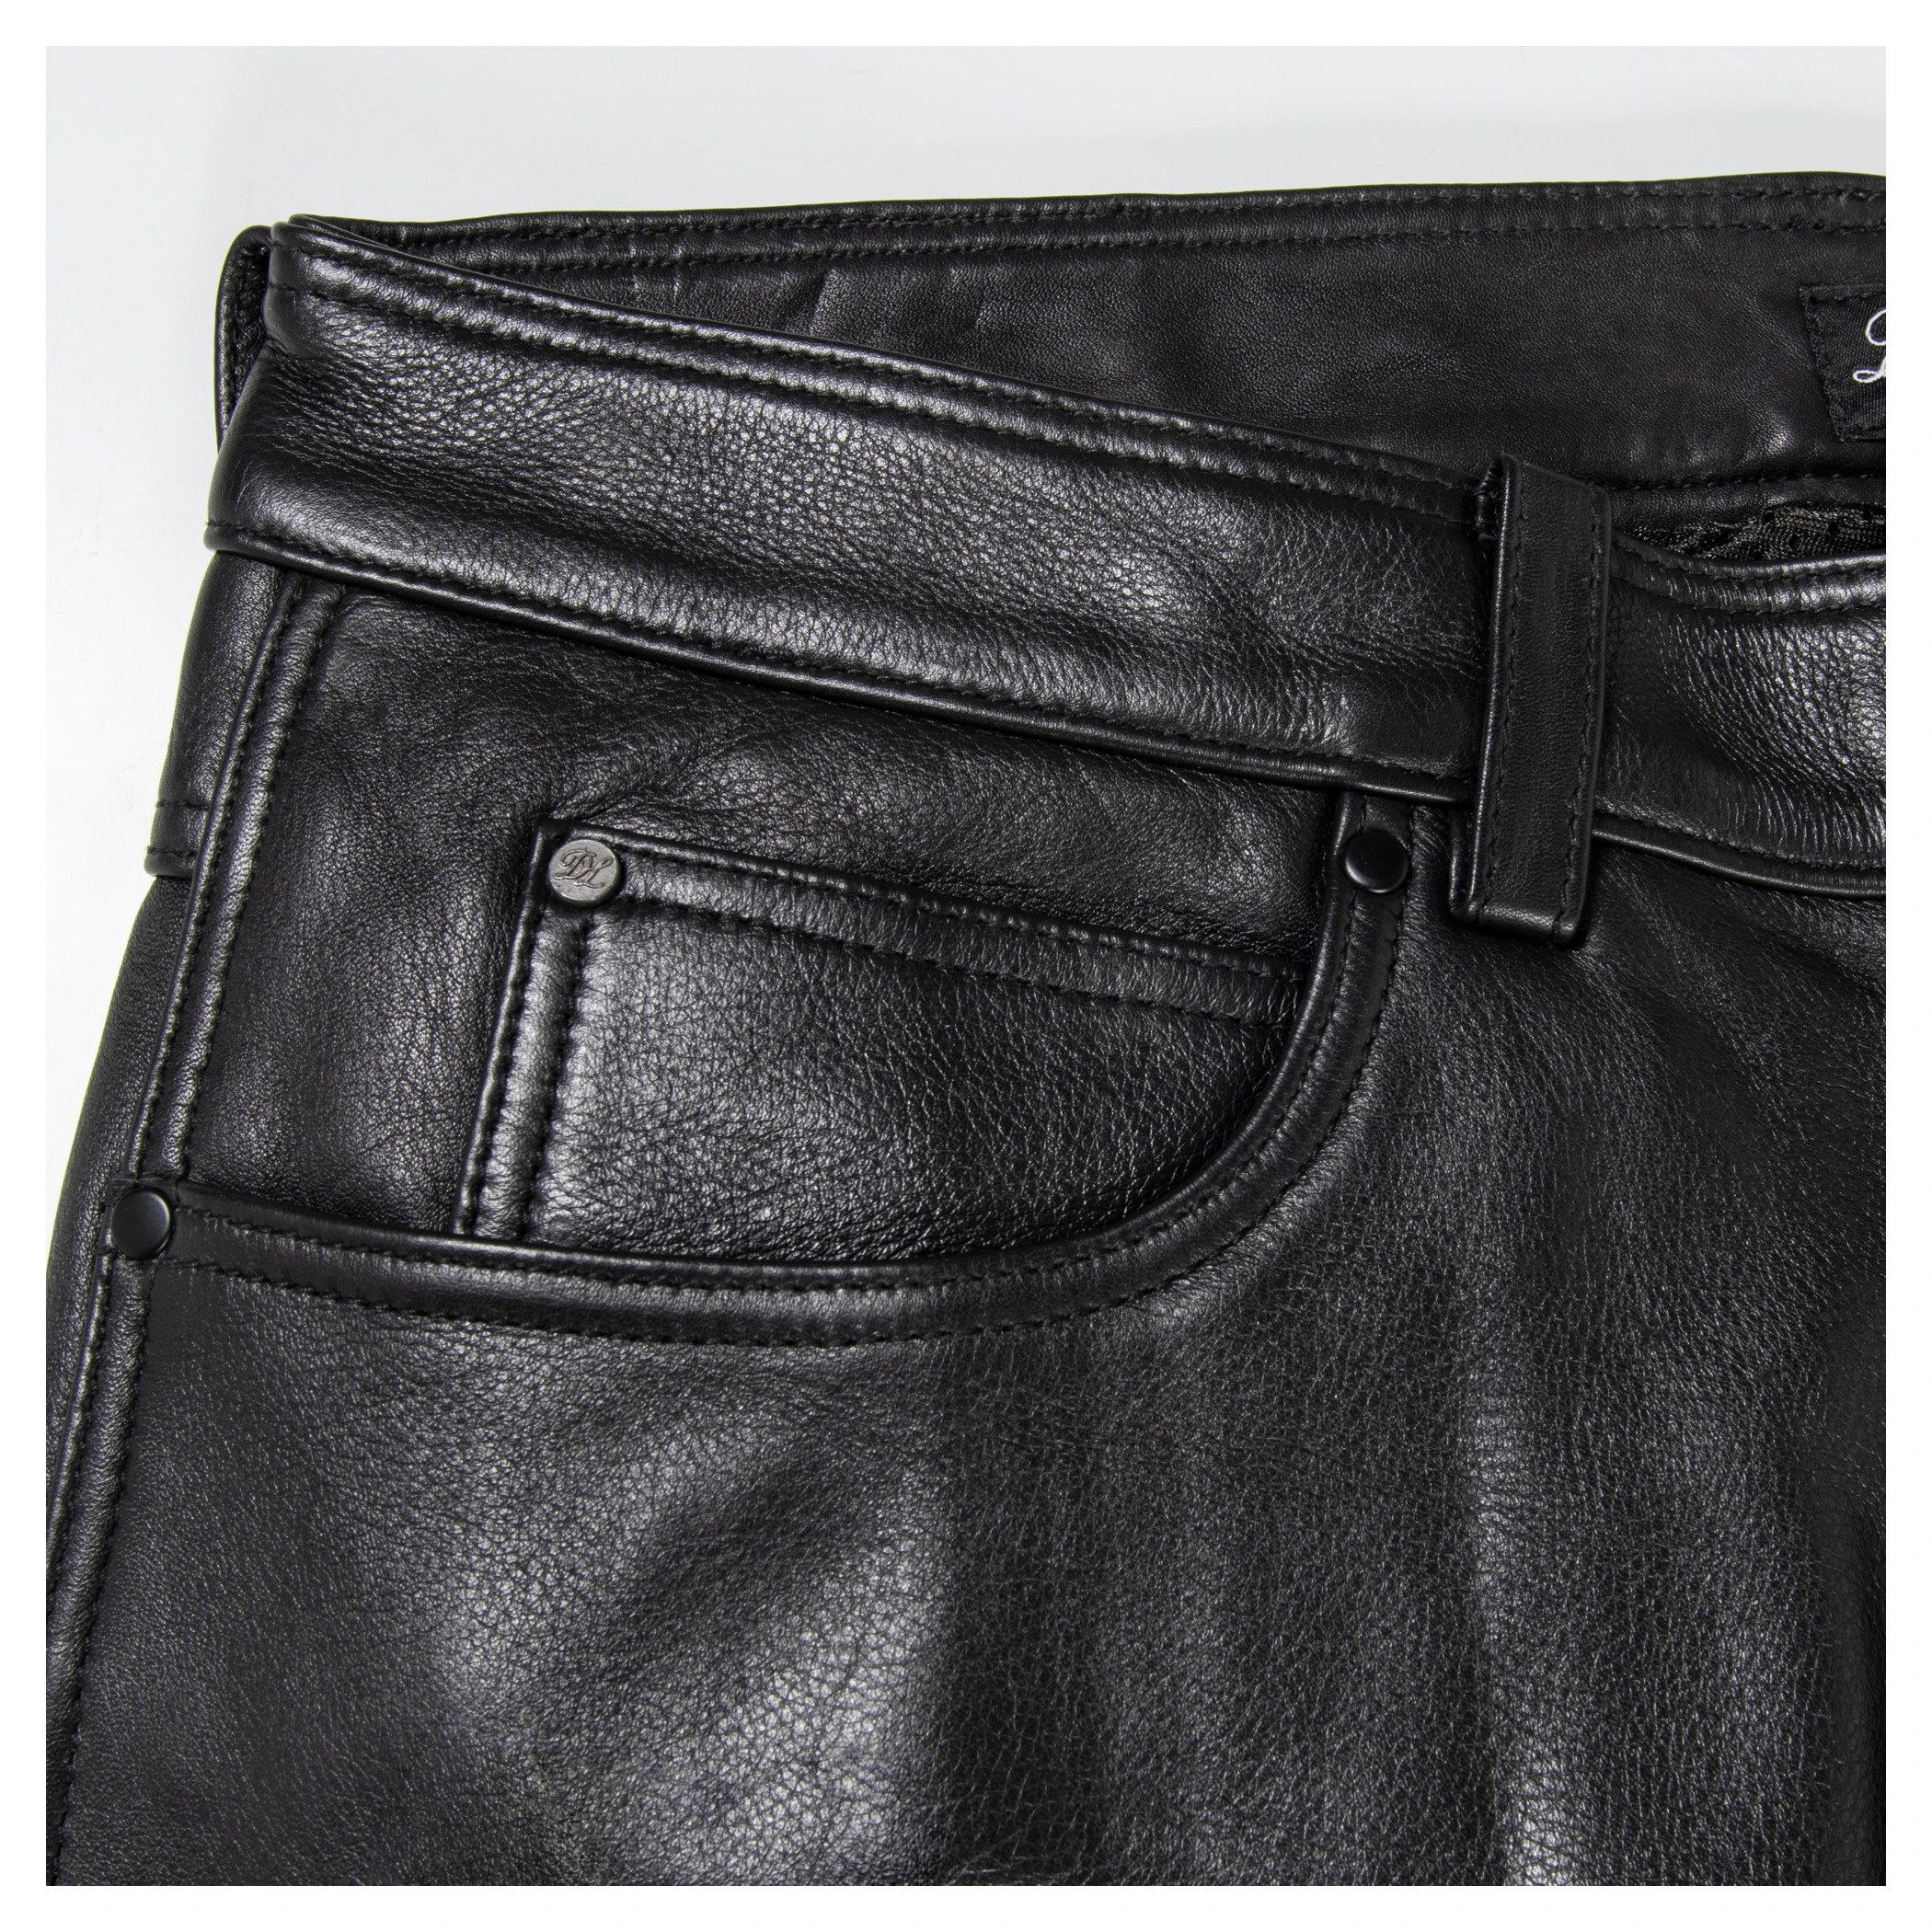 Detlev Louis Detlev Louis DL-PM-1 Leather Trousers